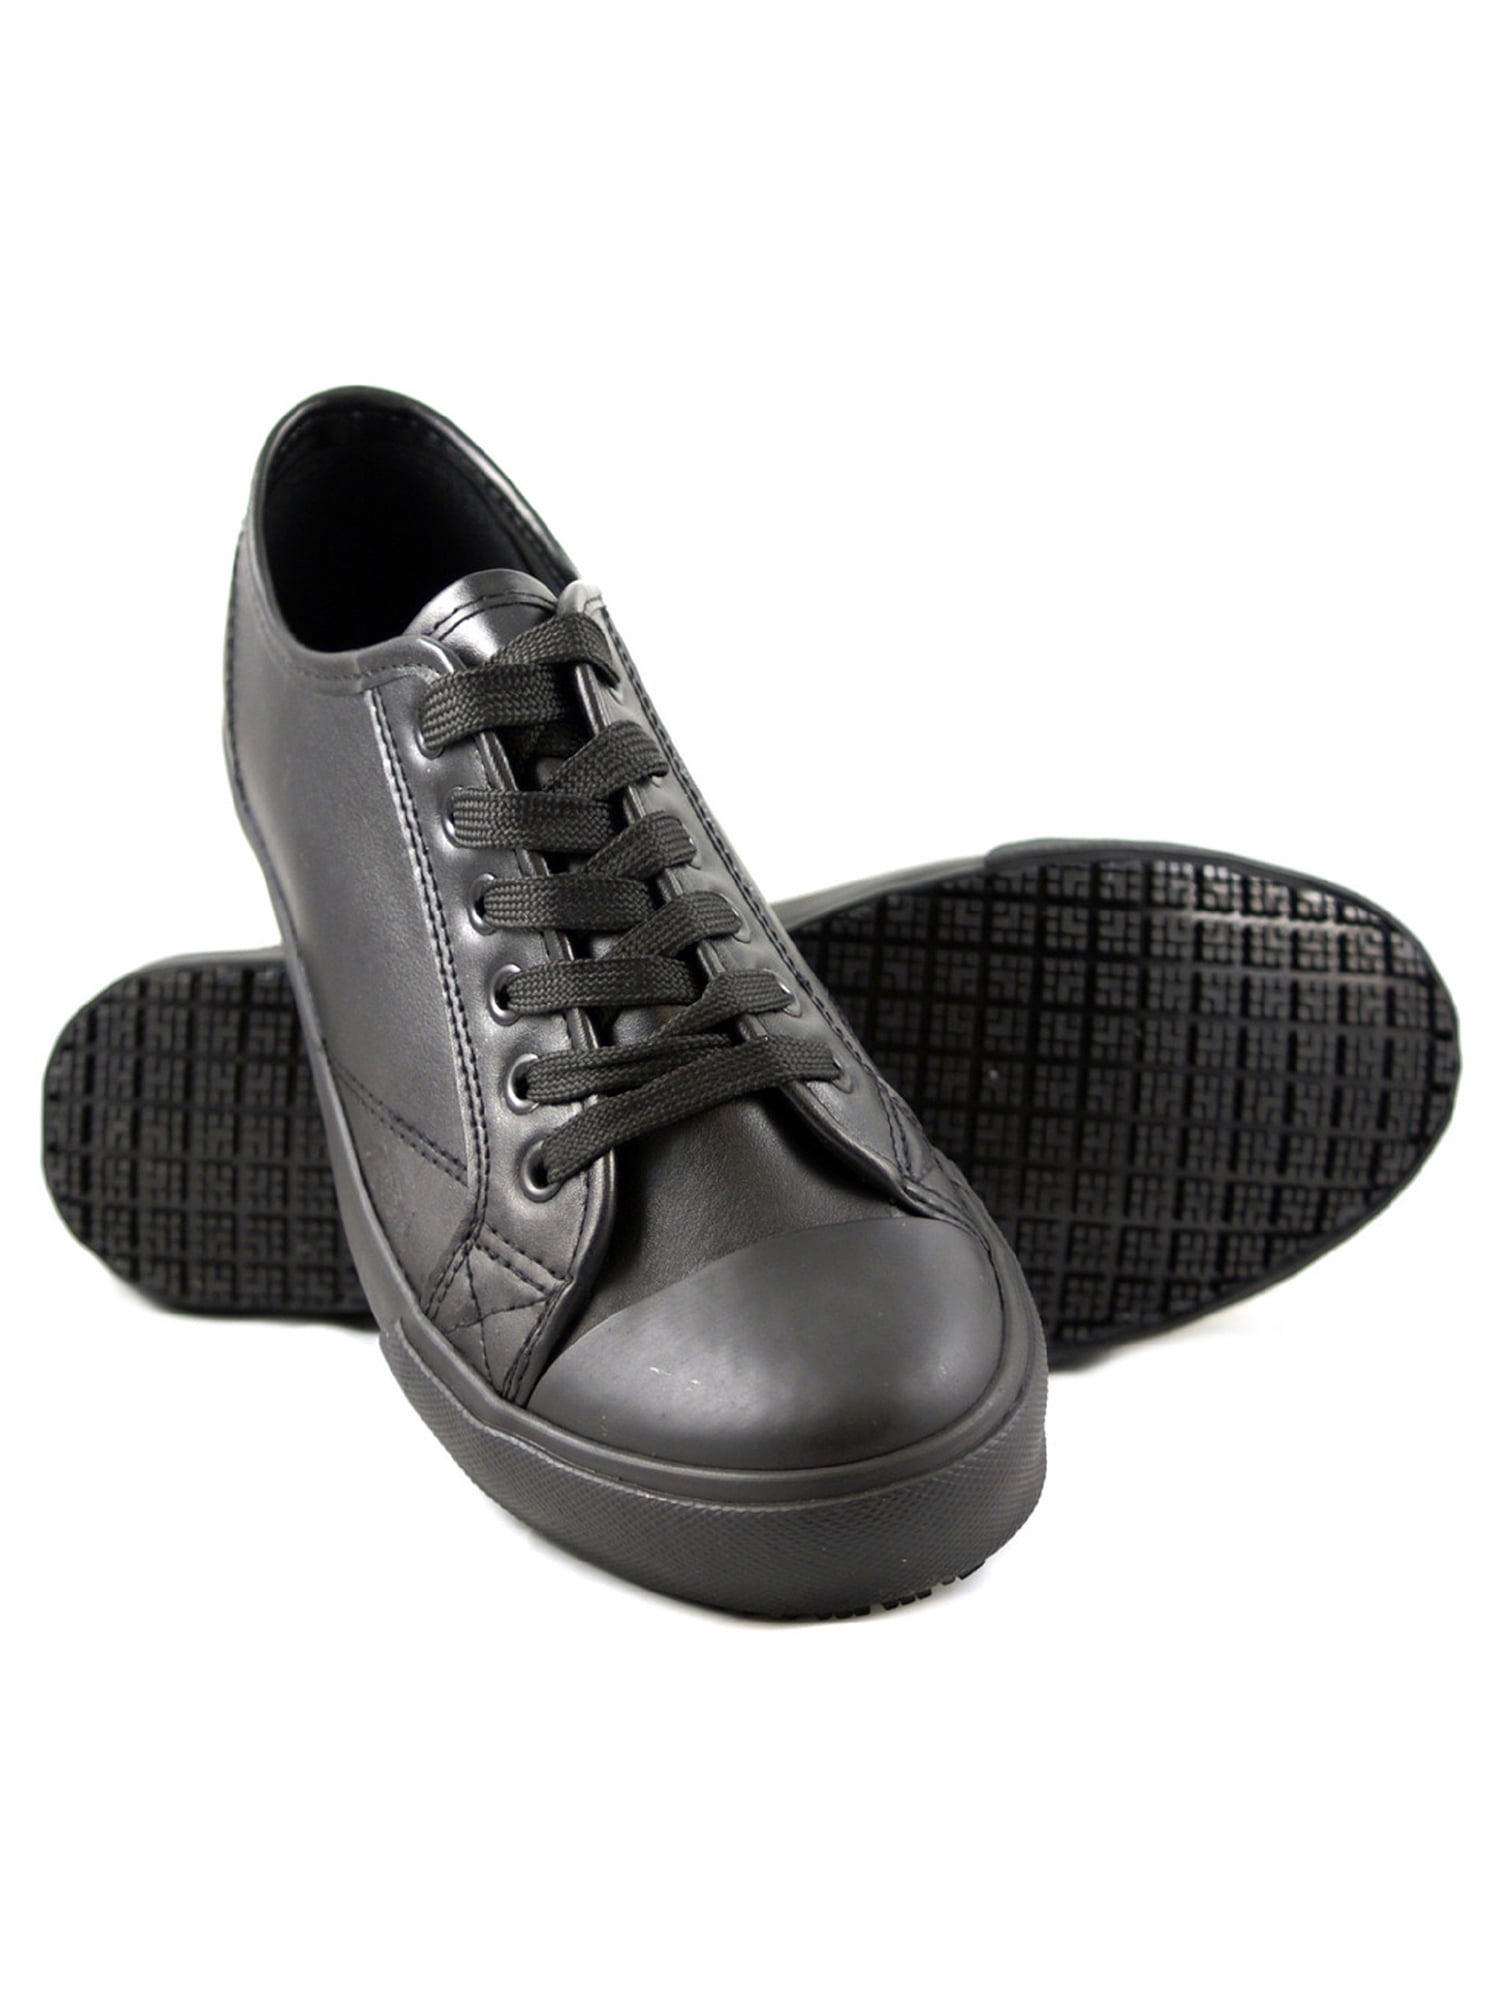 black oil resistant shoes